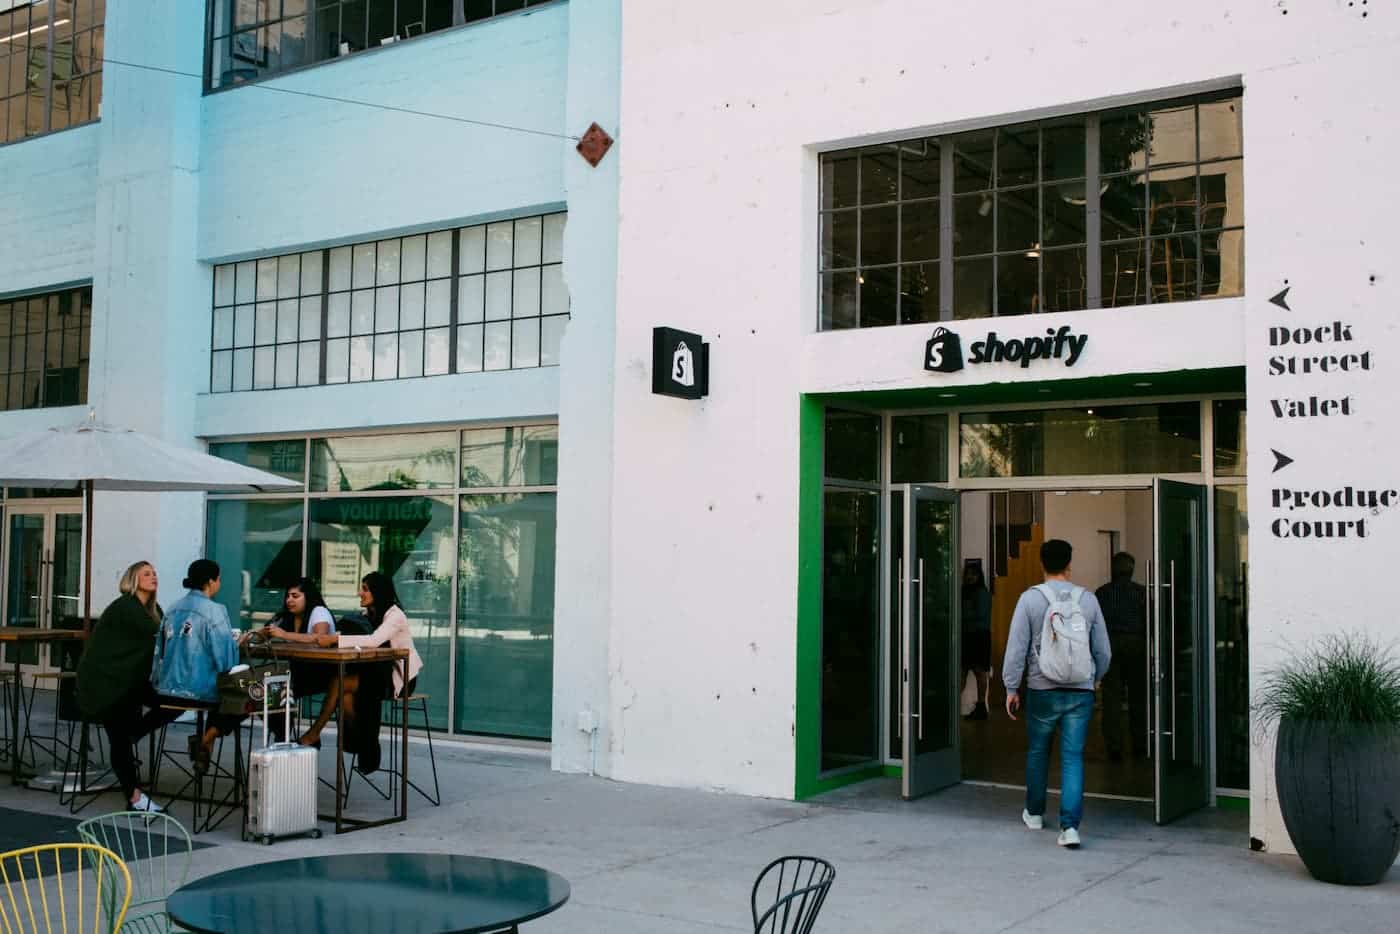 Ein Foto von einem weißen Gebäude mit dem Shopify-Logo oben auf dem Türrahmen